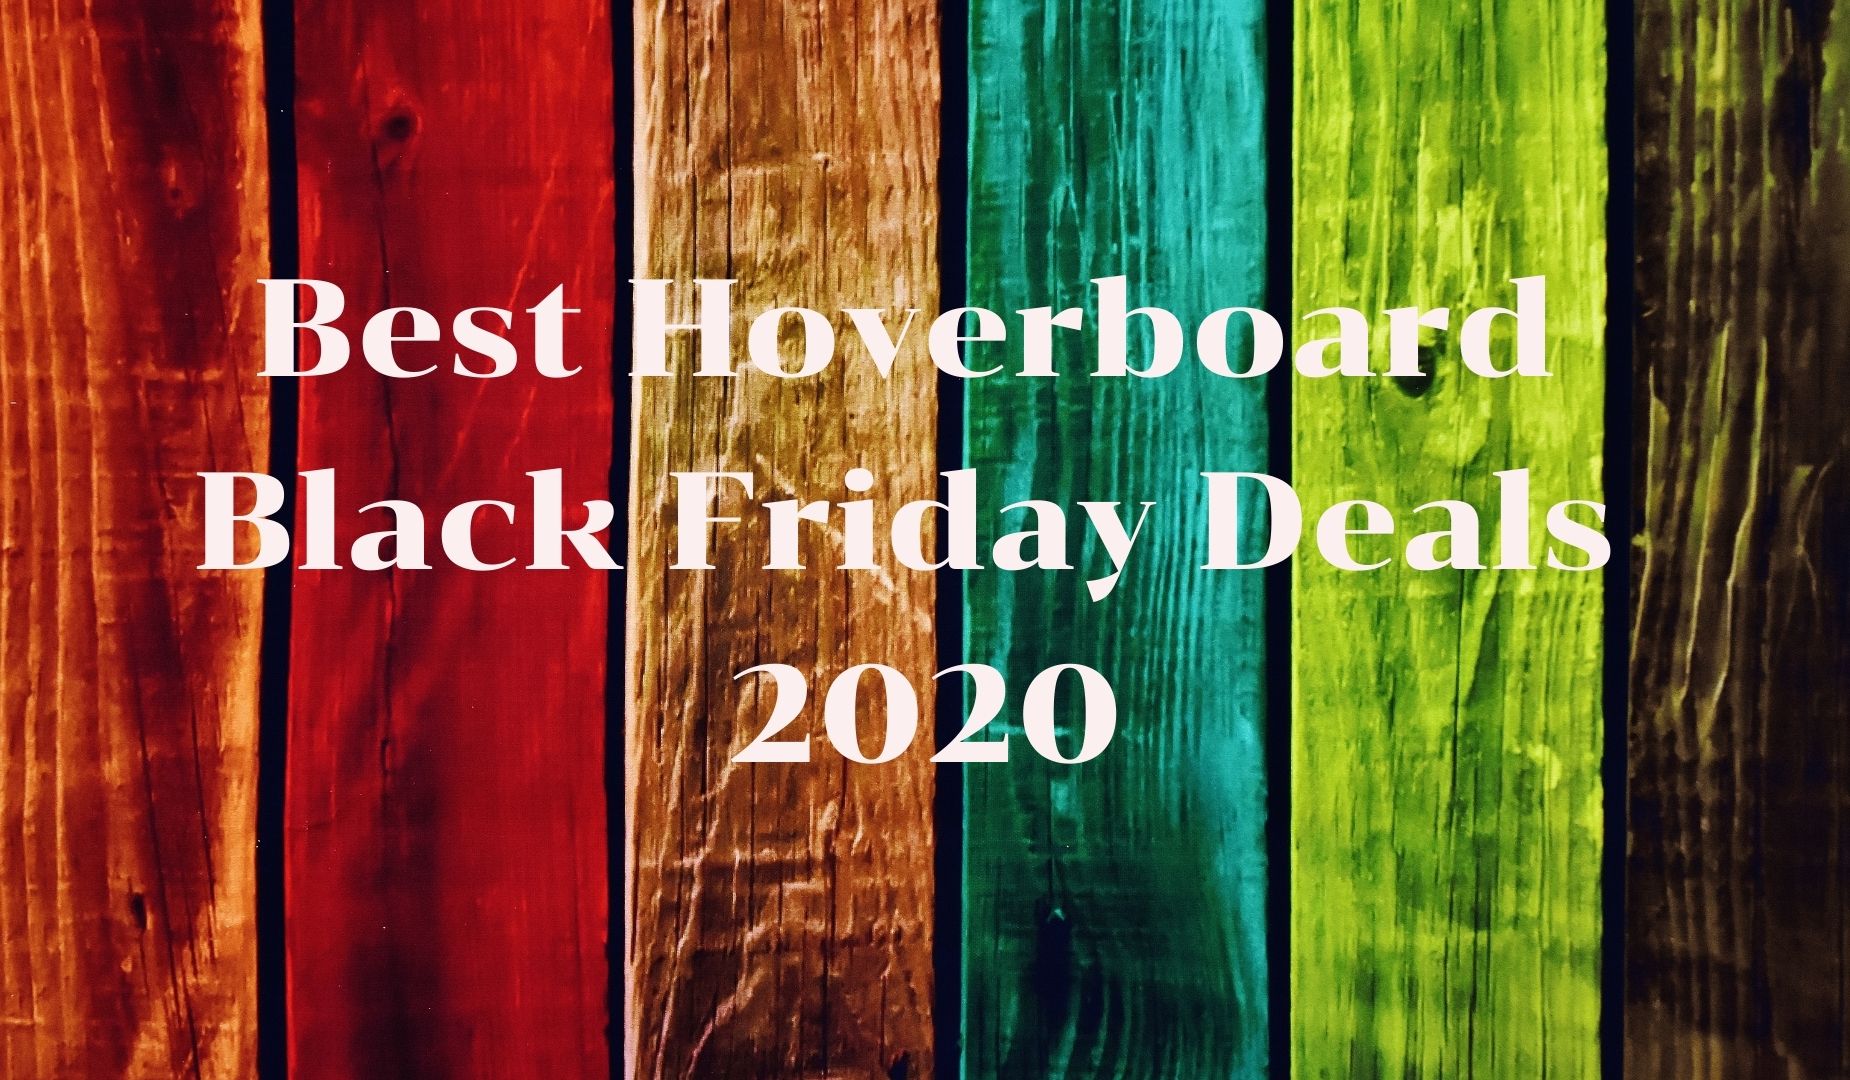 Best hoverboard Black Friday deals 2020